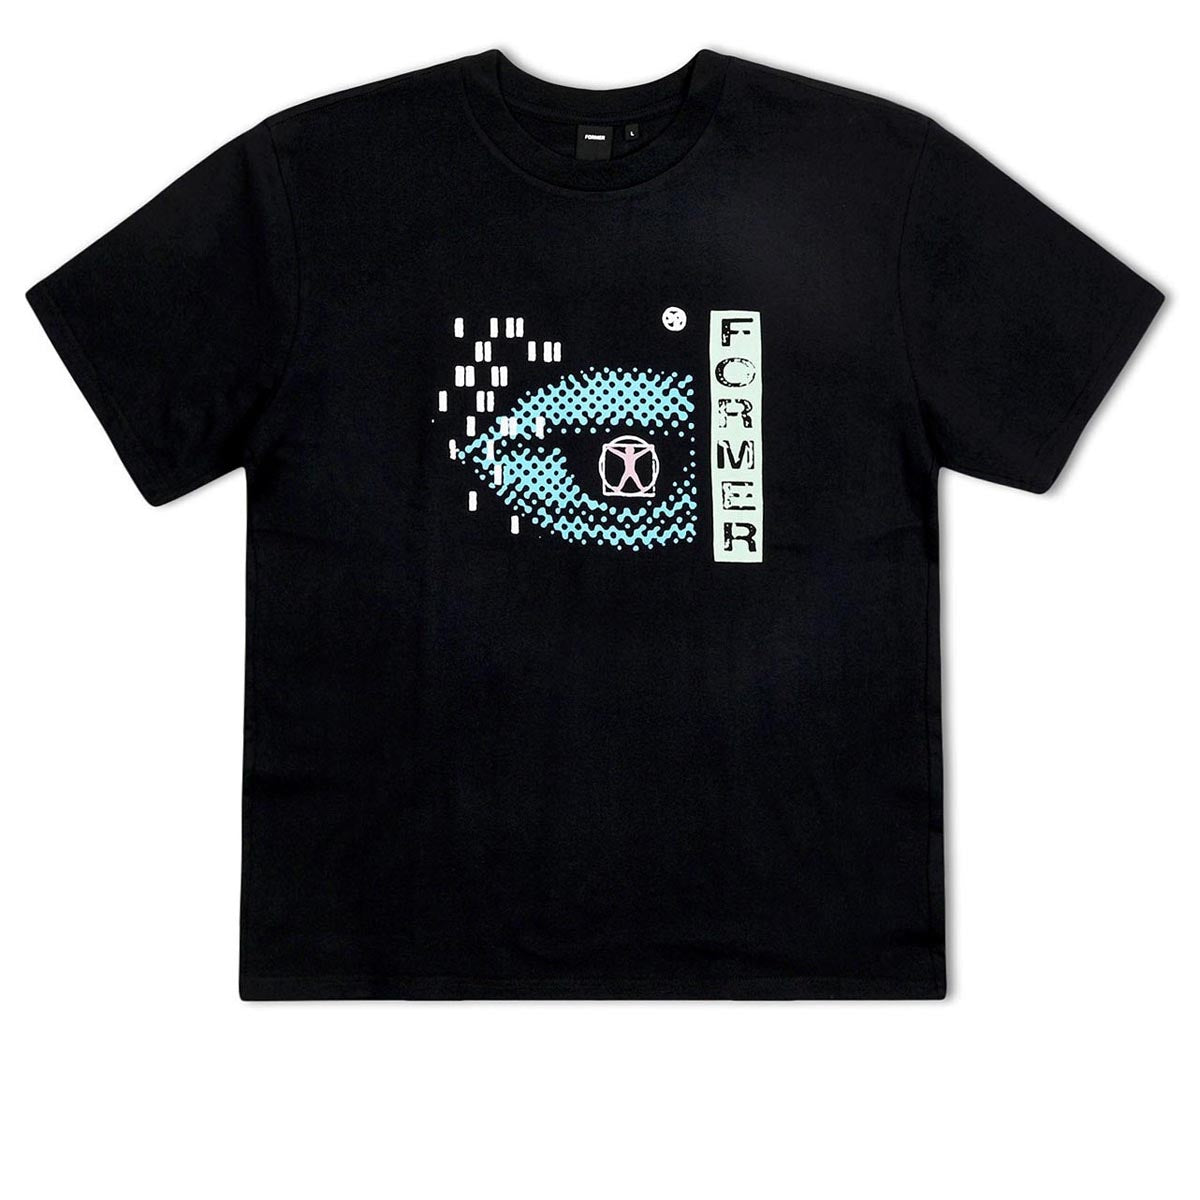 Former Aperture T-Shirt - Black image 1